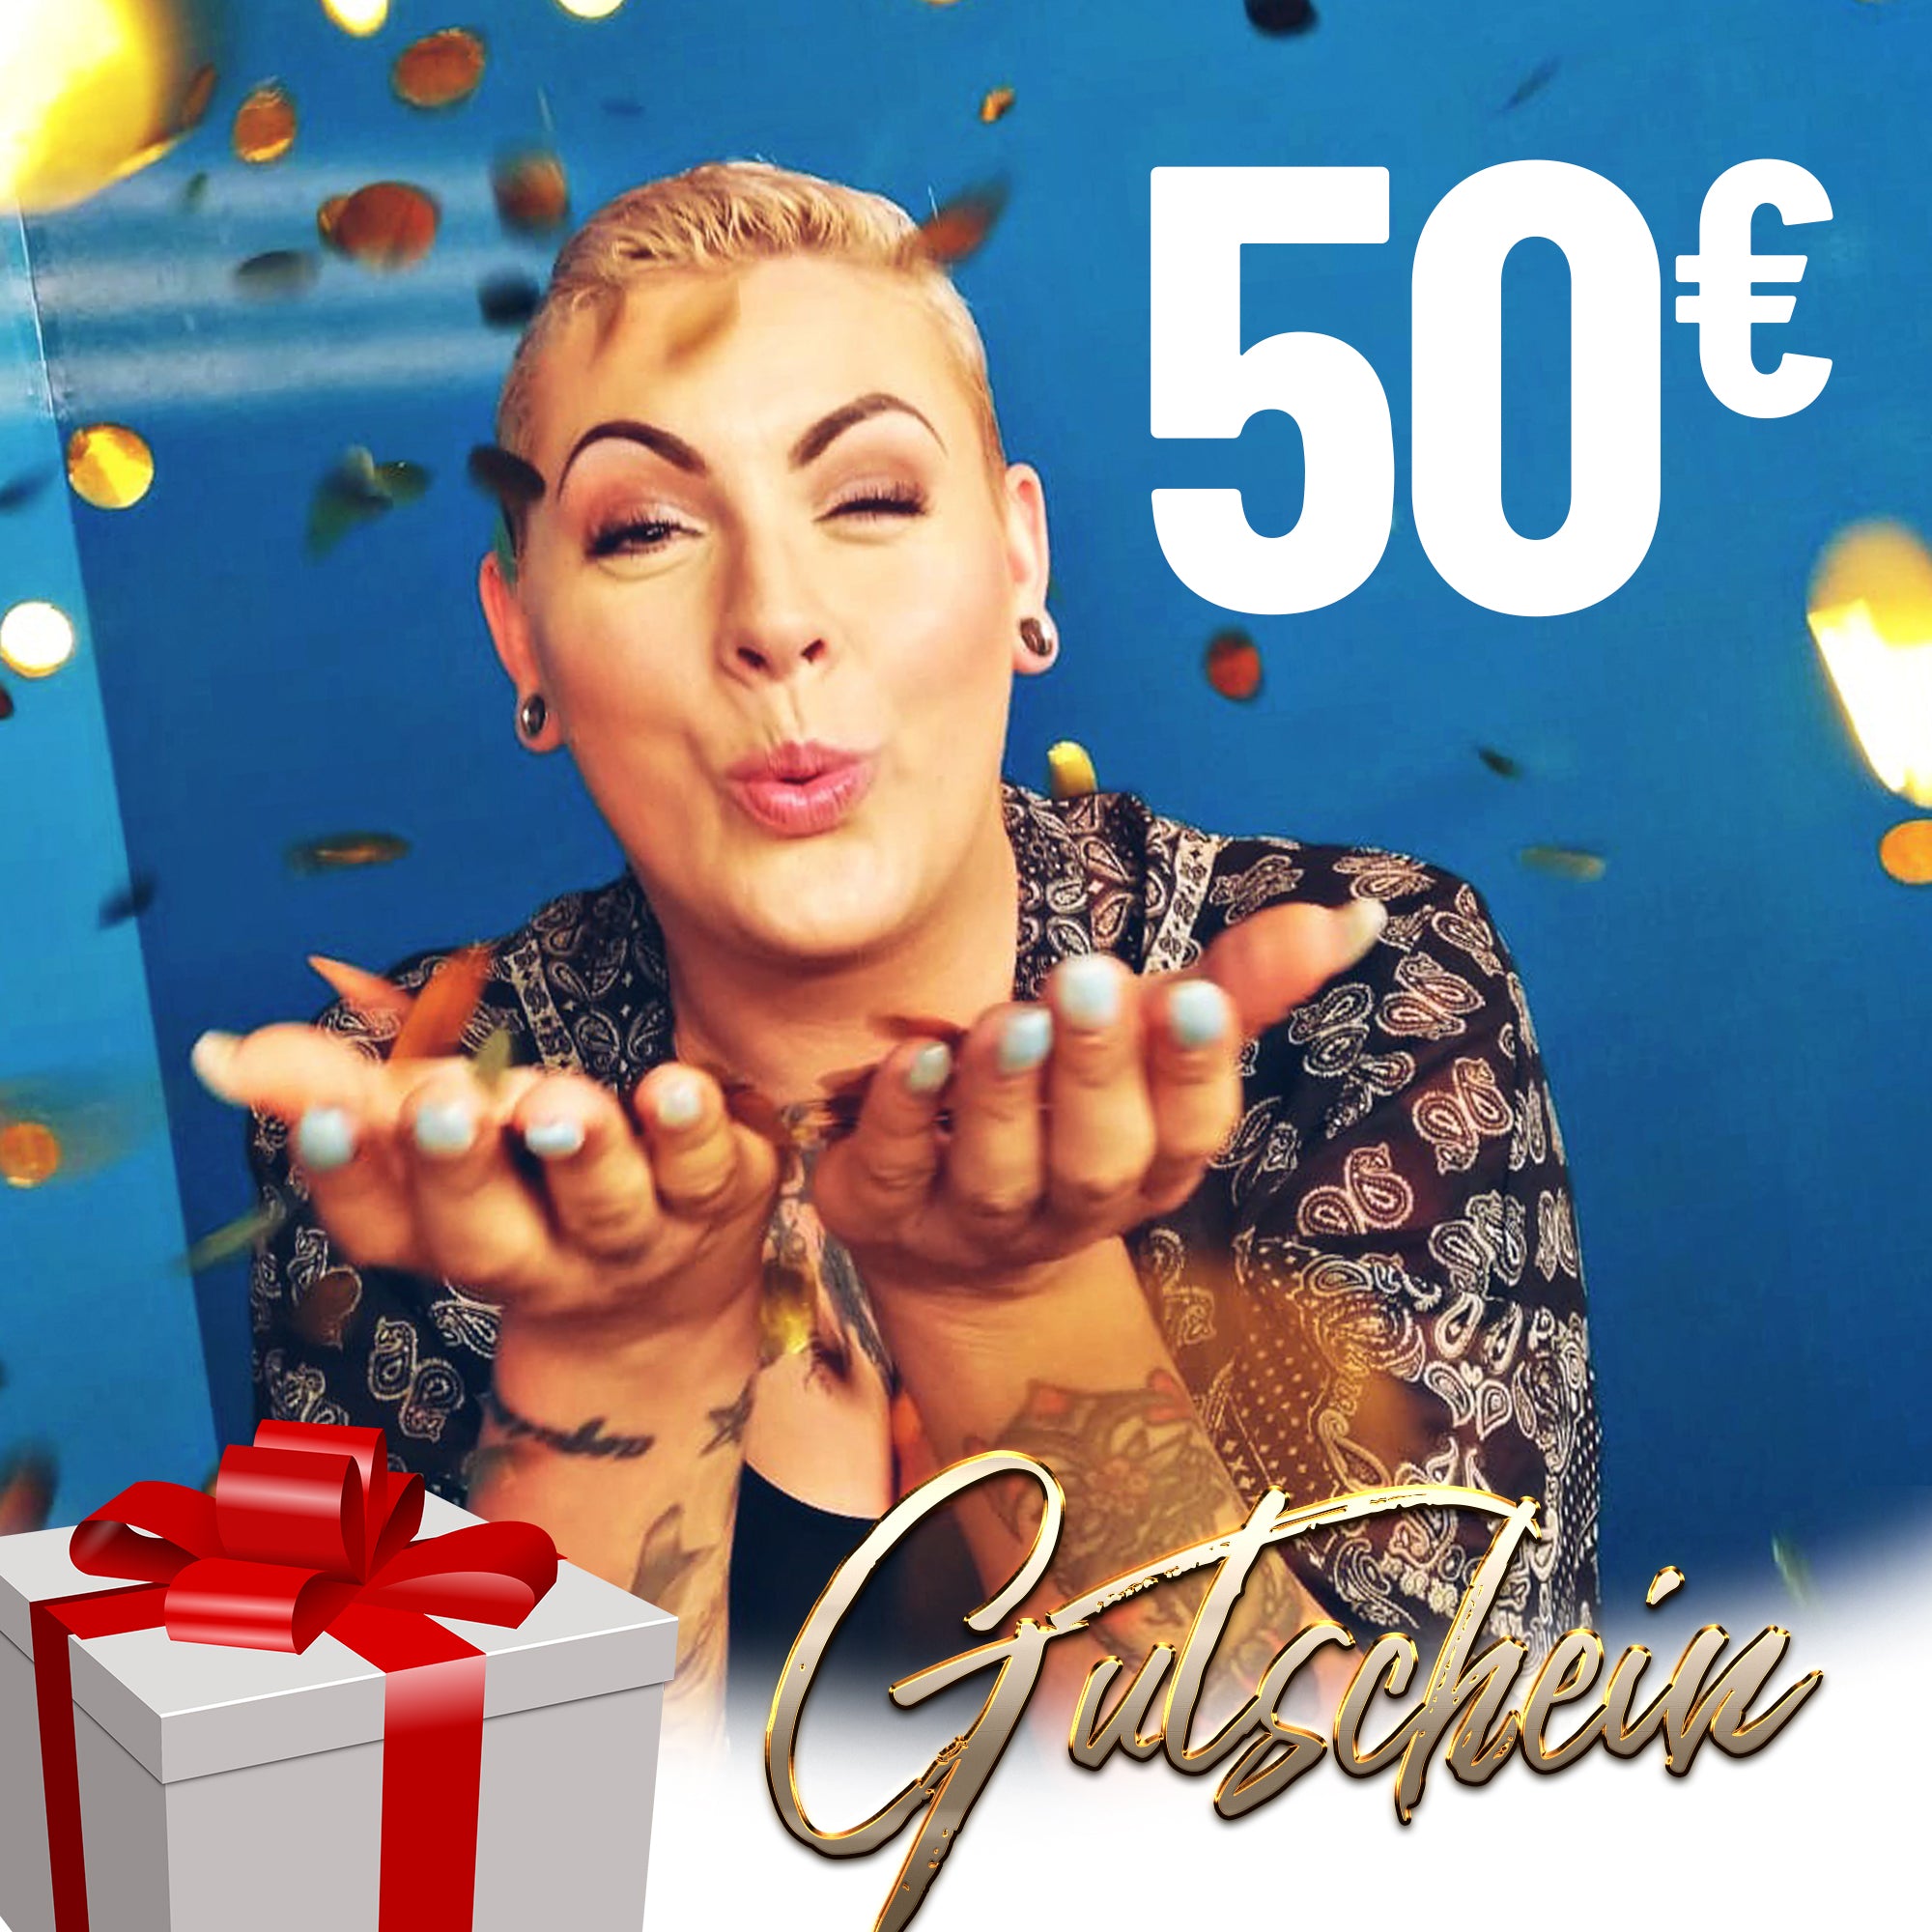 50 Euro - Geschenkgutschein